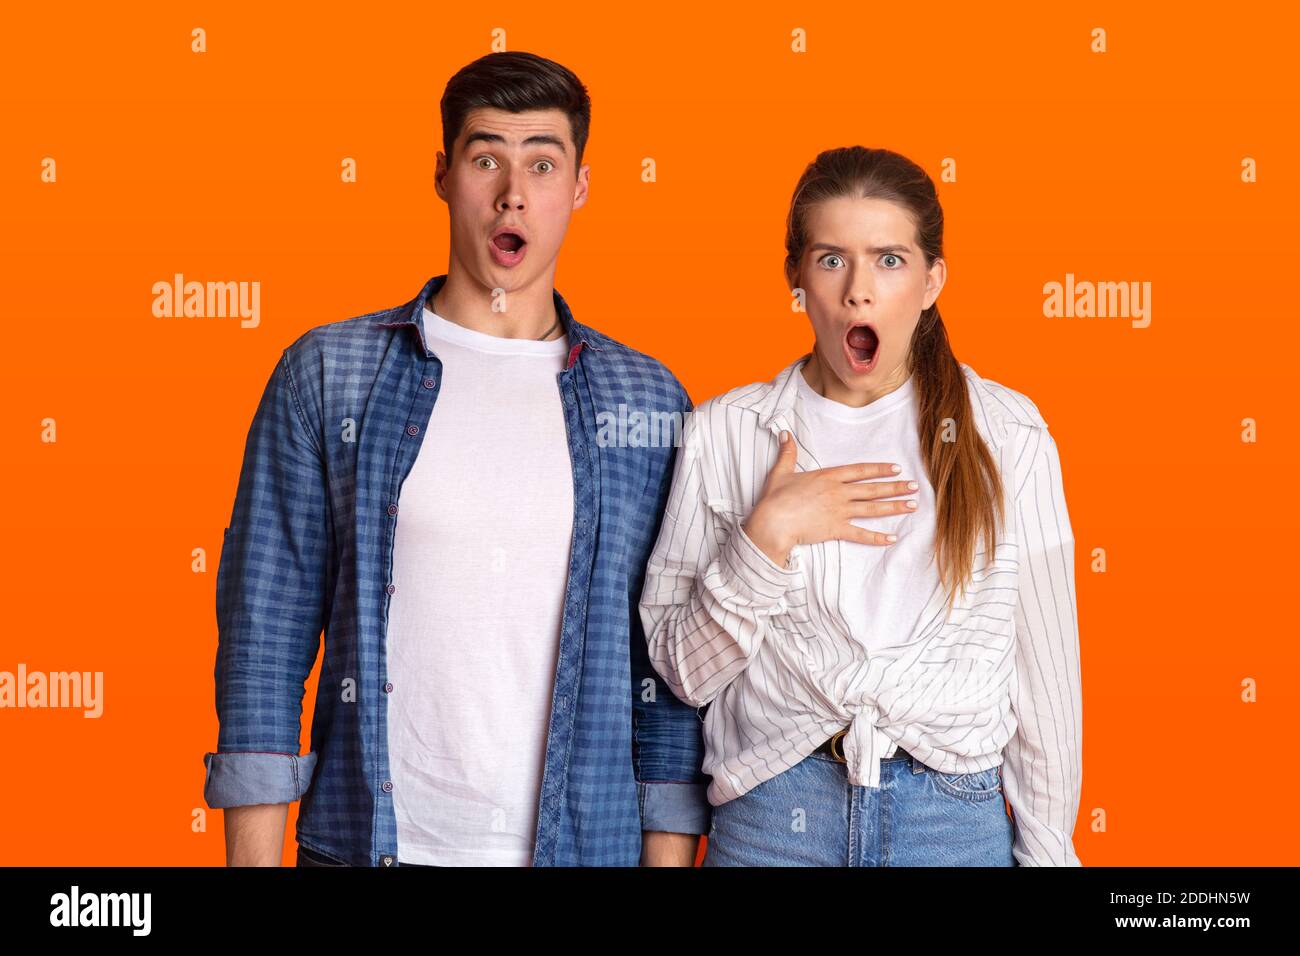 Jeune couple surpris avec des bouches ouvertes regardant la caméra Banque D'Images